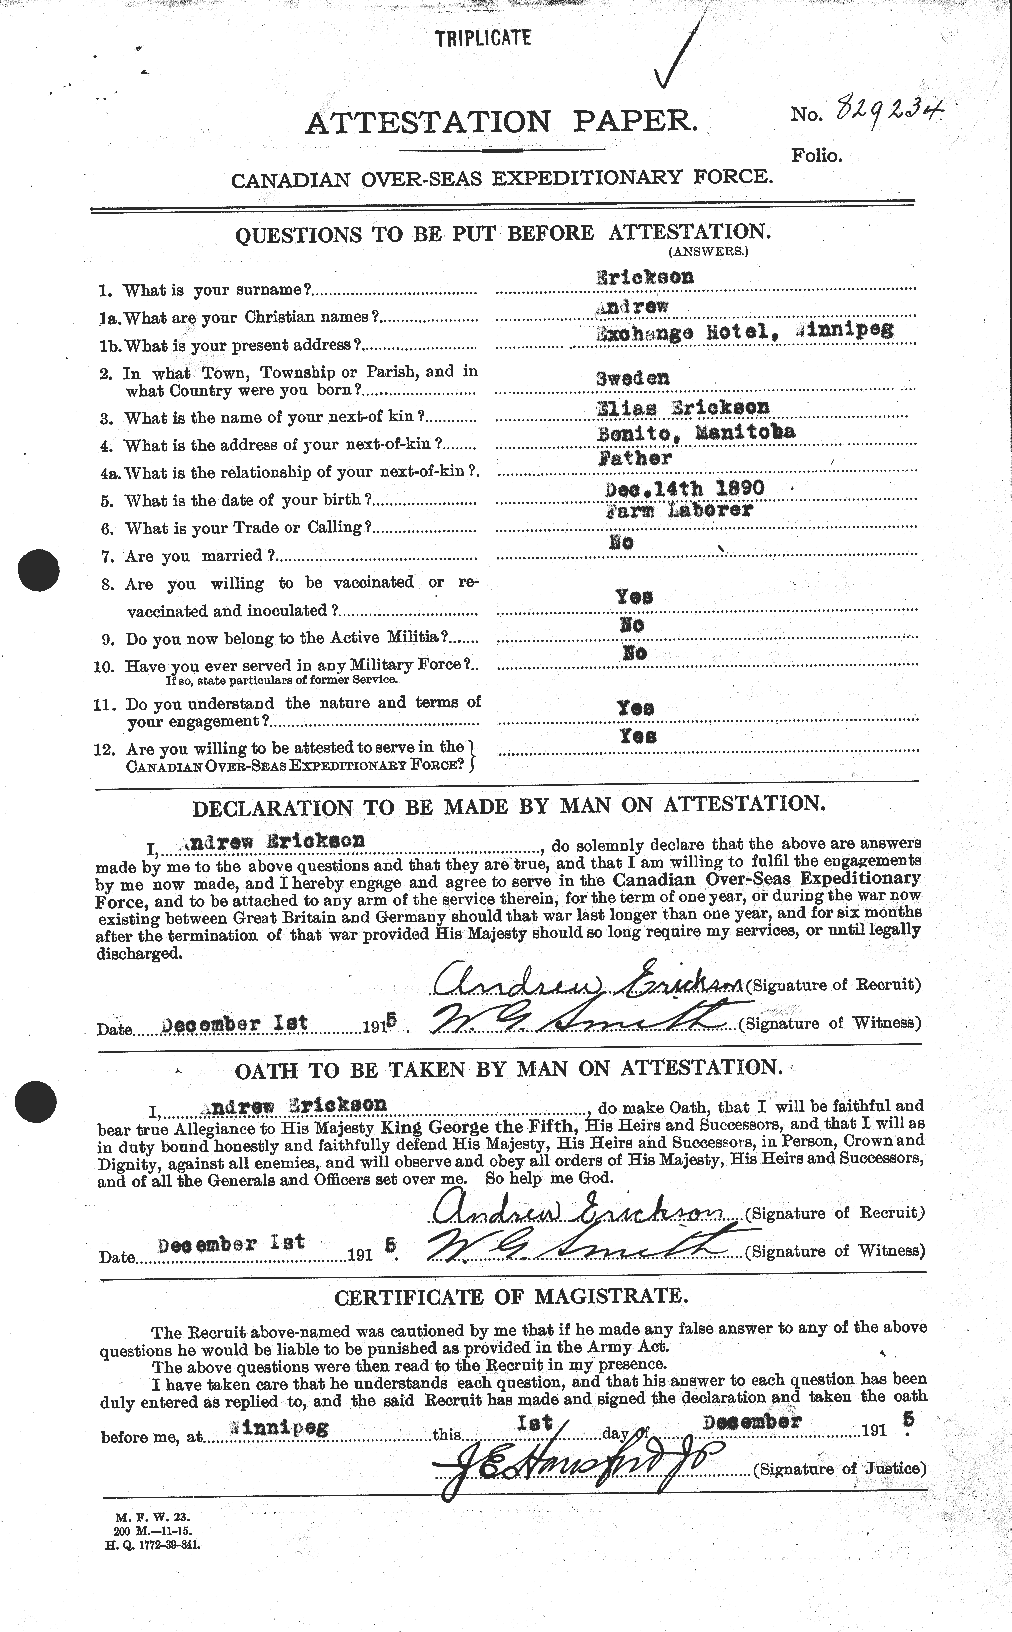 Dossiers du Personnel de la Première Guerre mondiale - CEC 313340a